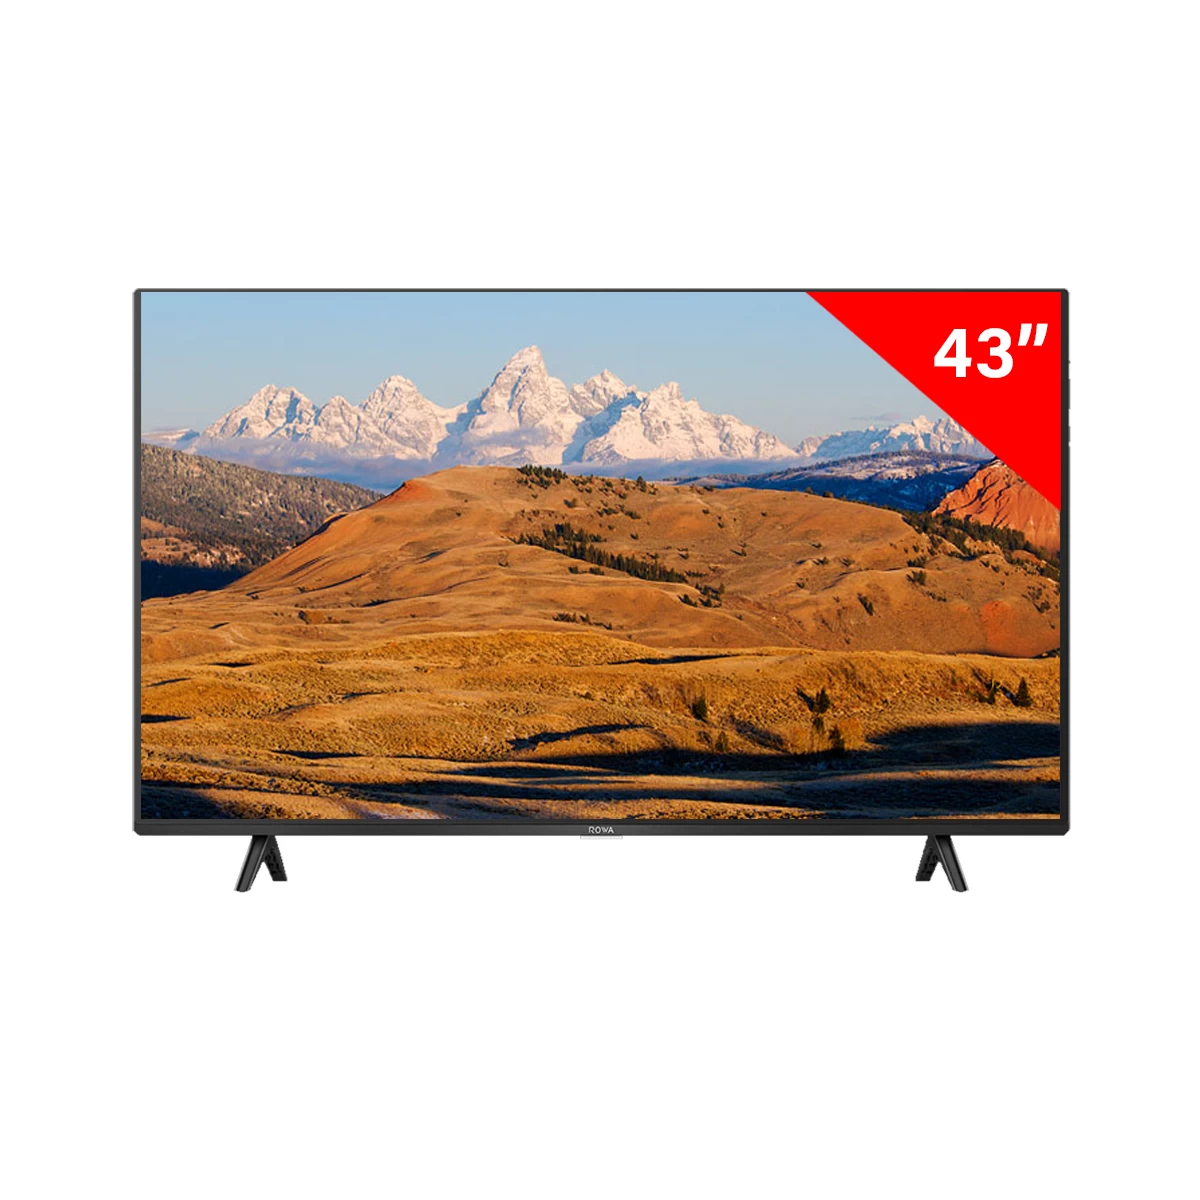 ROWA 43 inch 4k Smart TV | 43S52